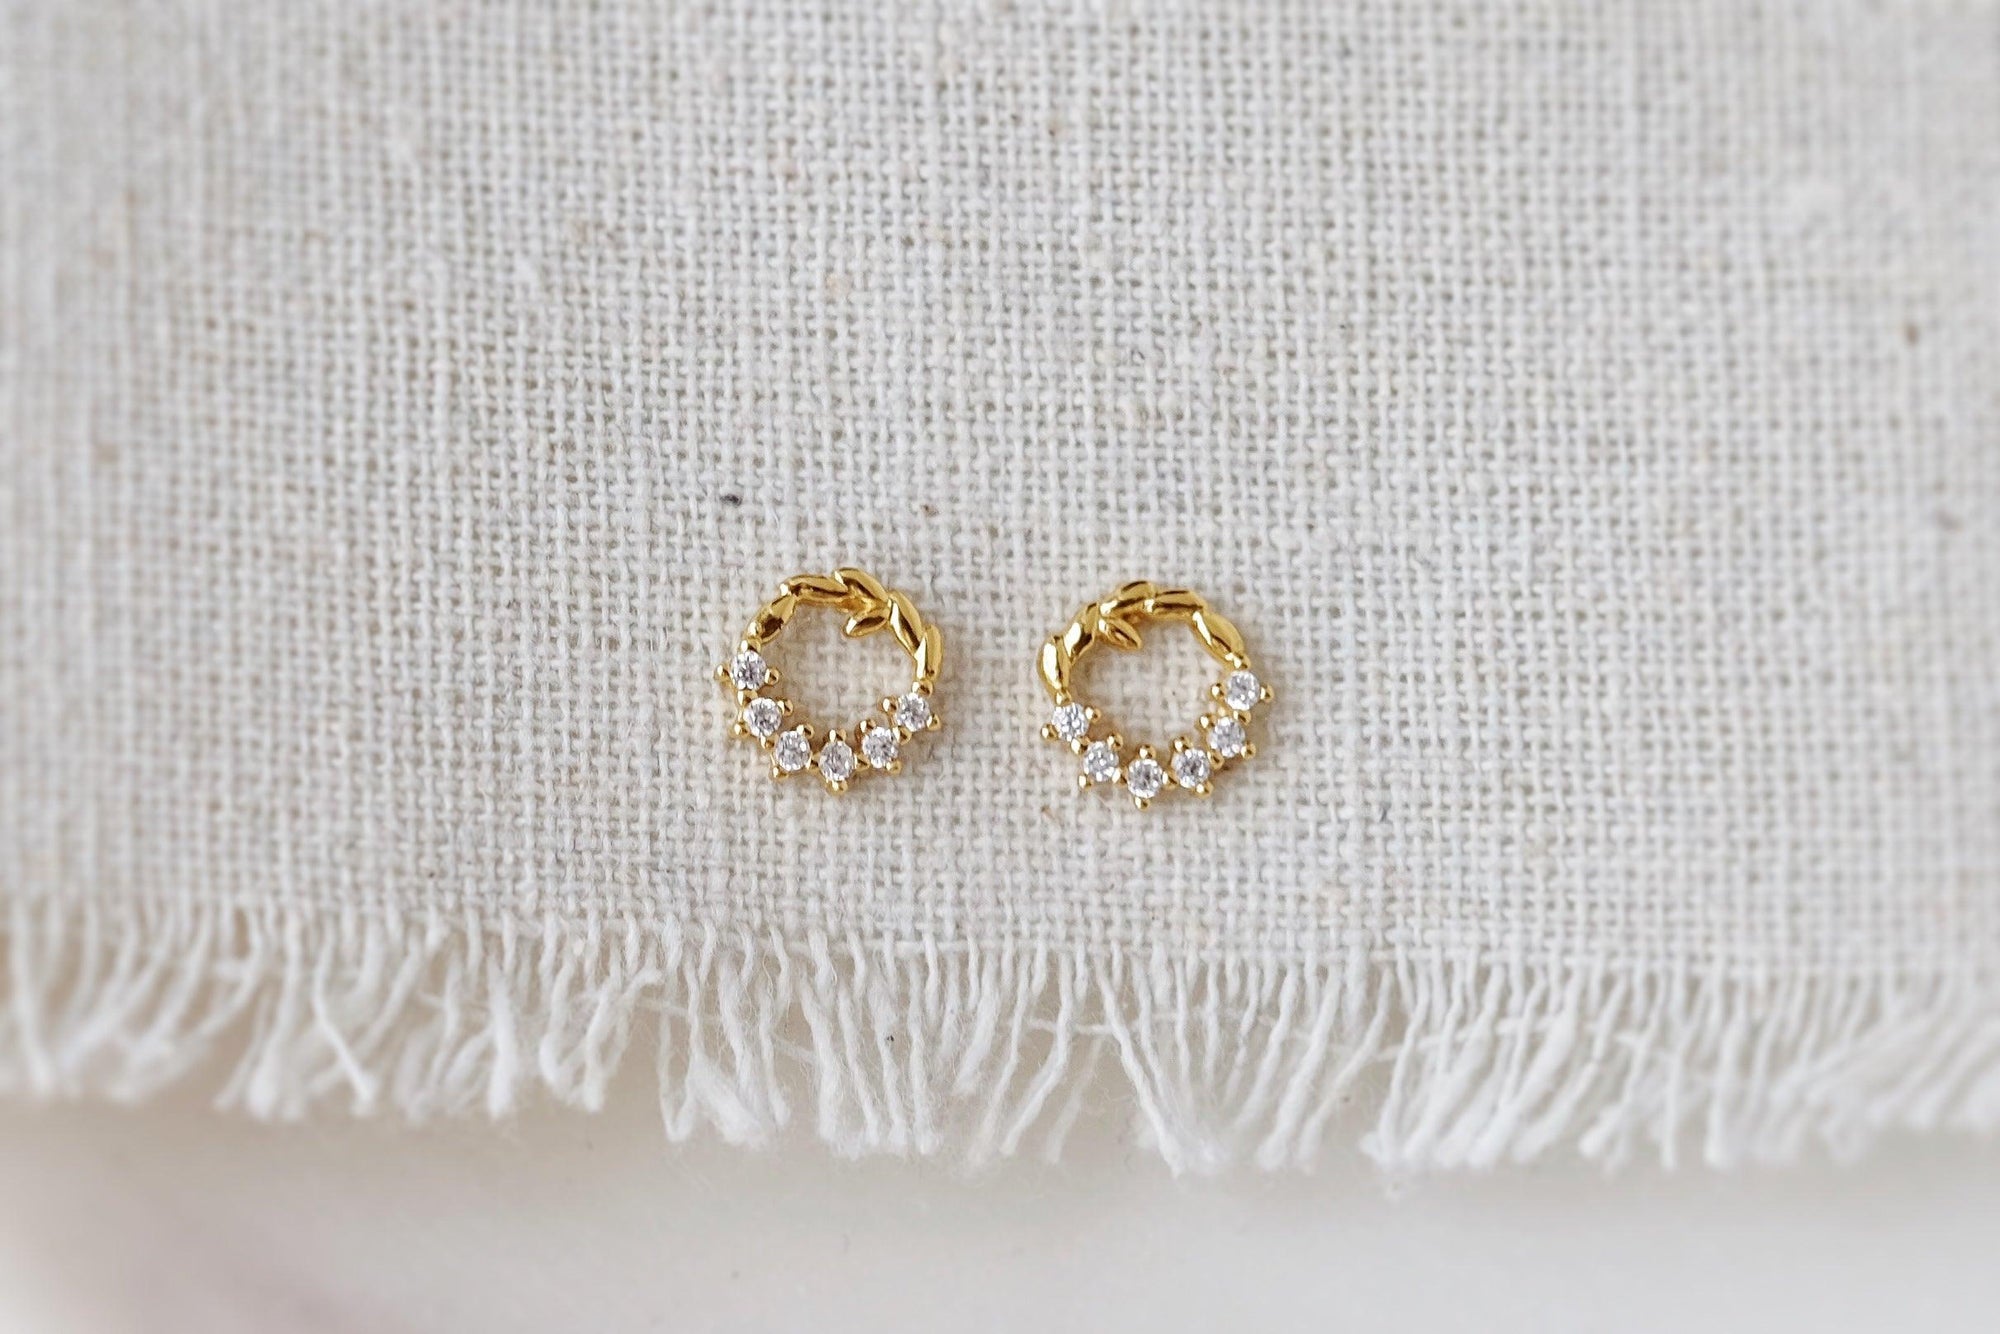 Gold Wreath Earrings - Catalyst & Co